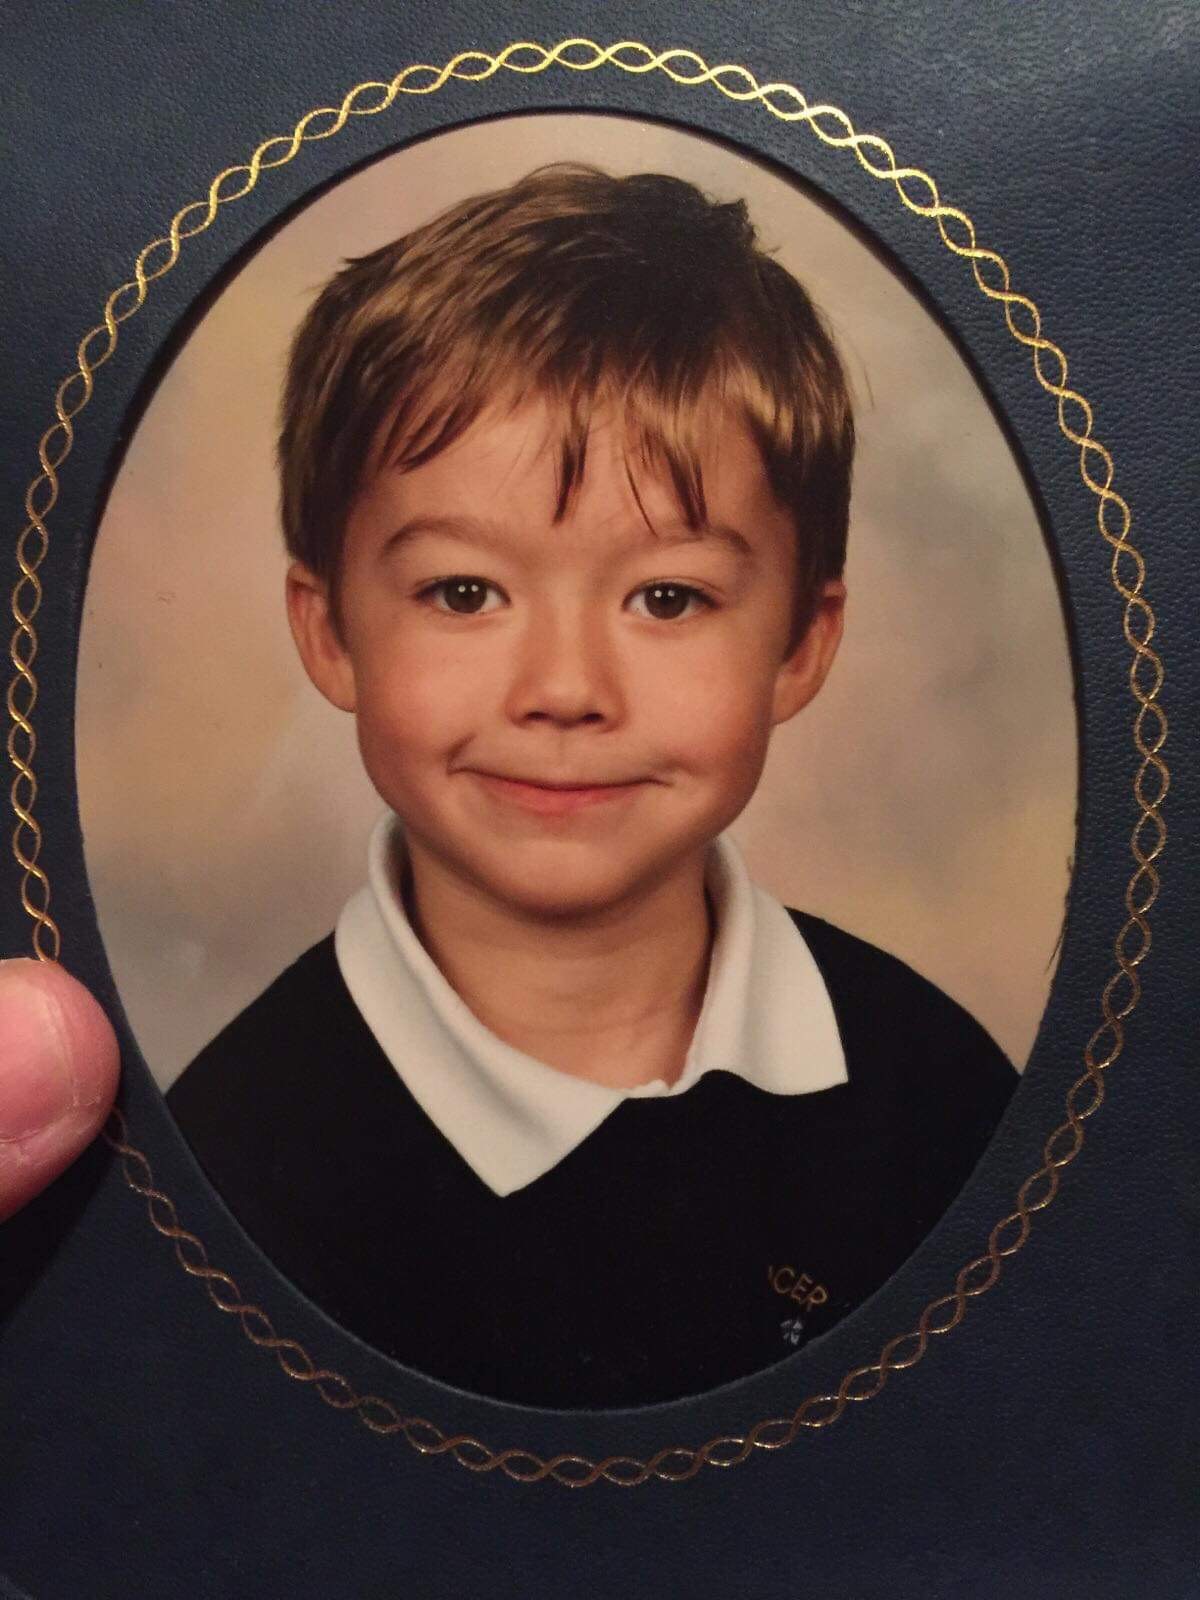 Damon as a boy 